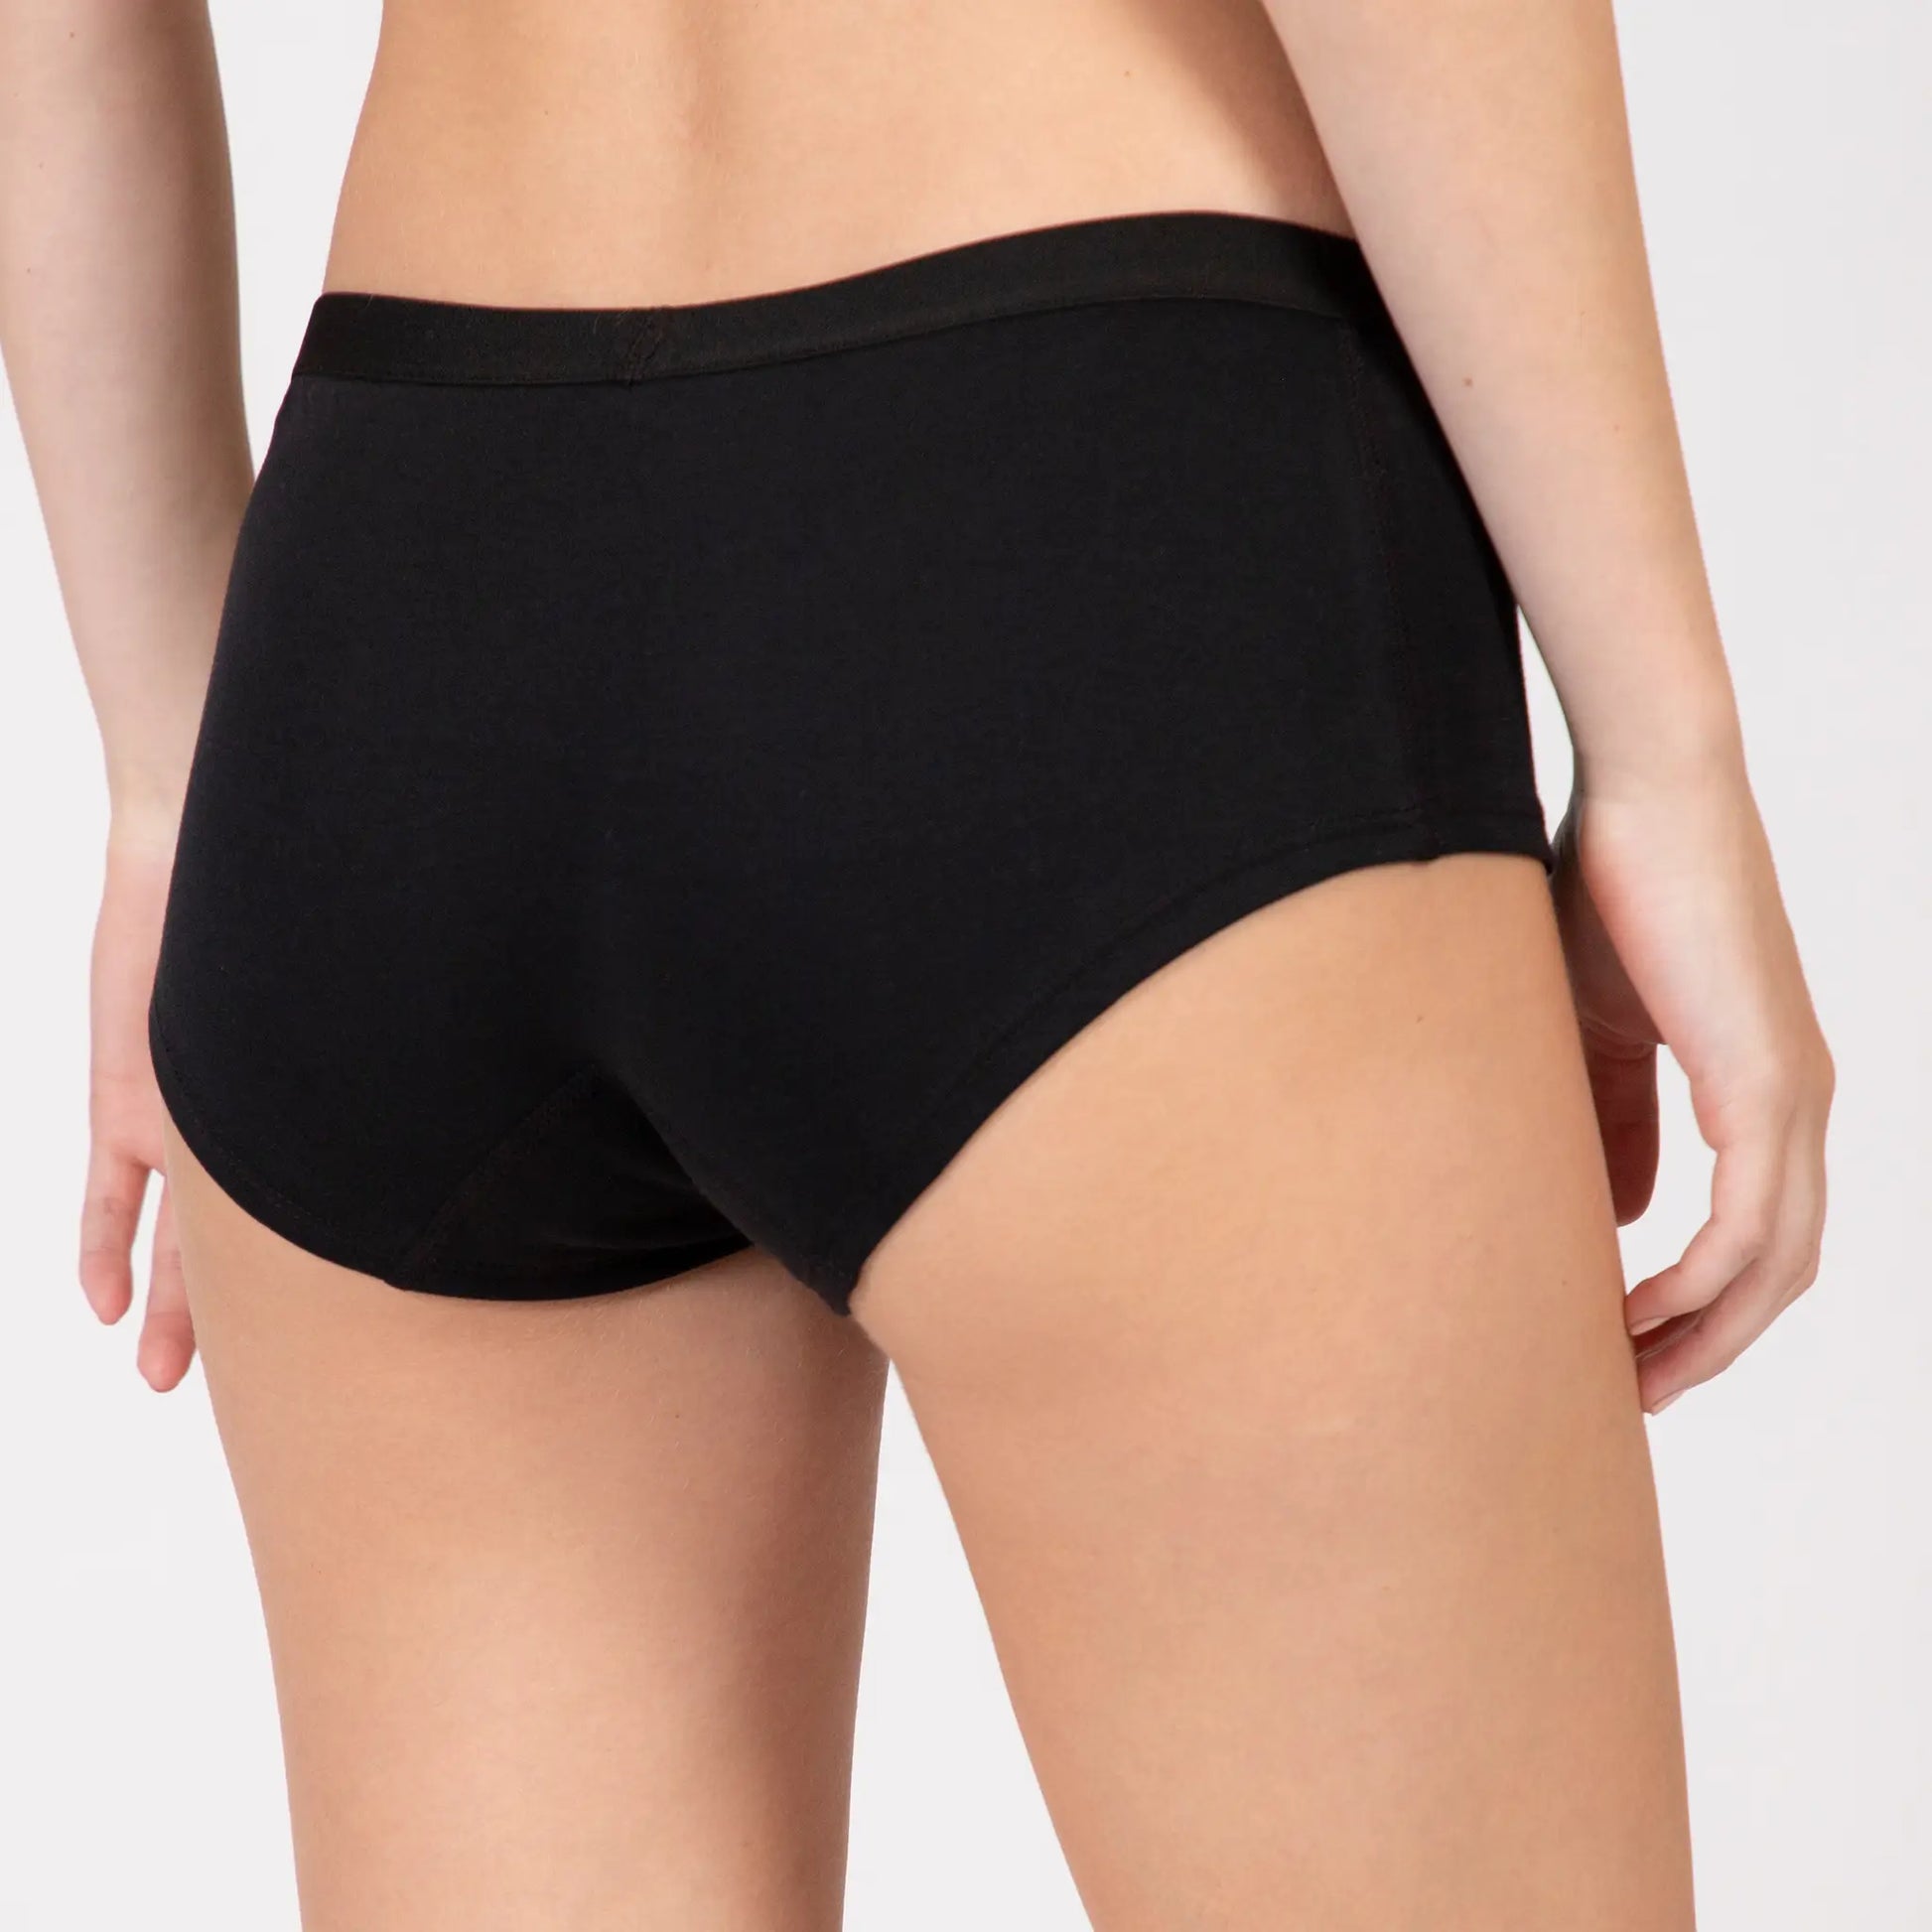 Buy ALAXENDER Ladies Panties Underwear for Women Multipack